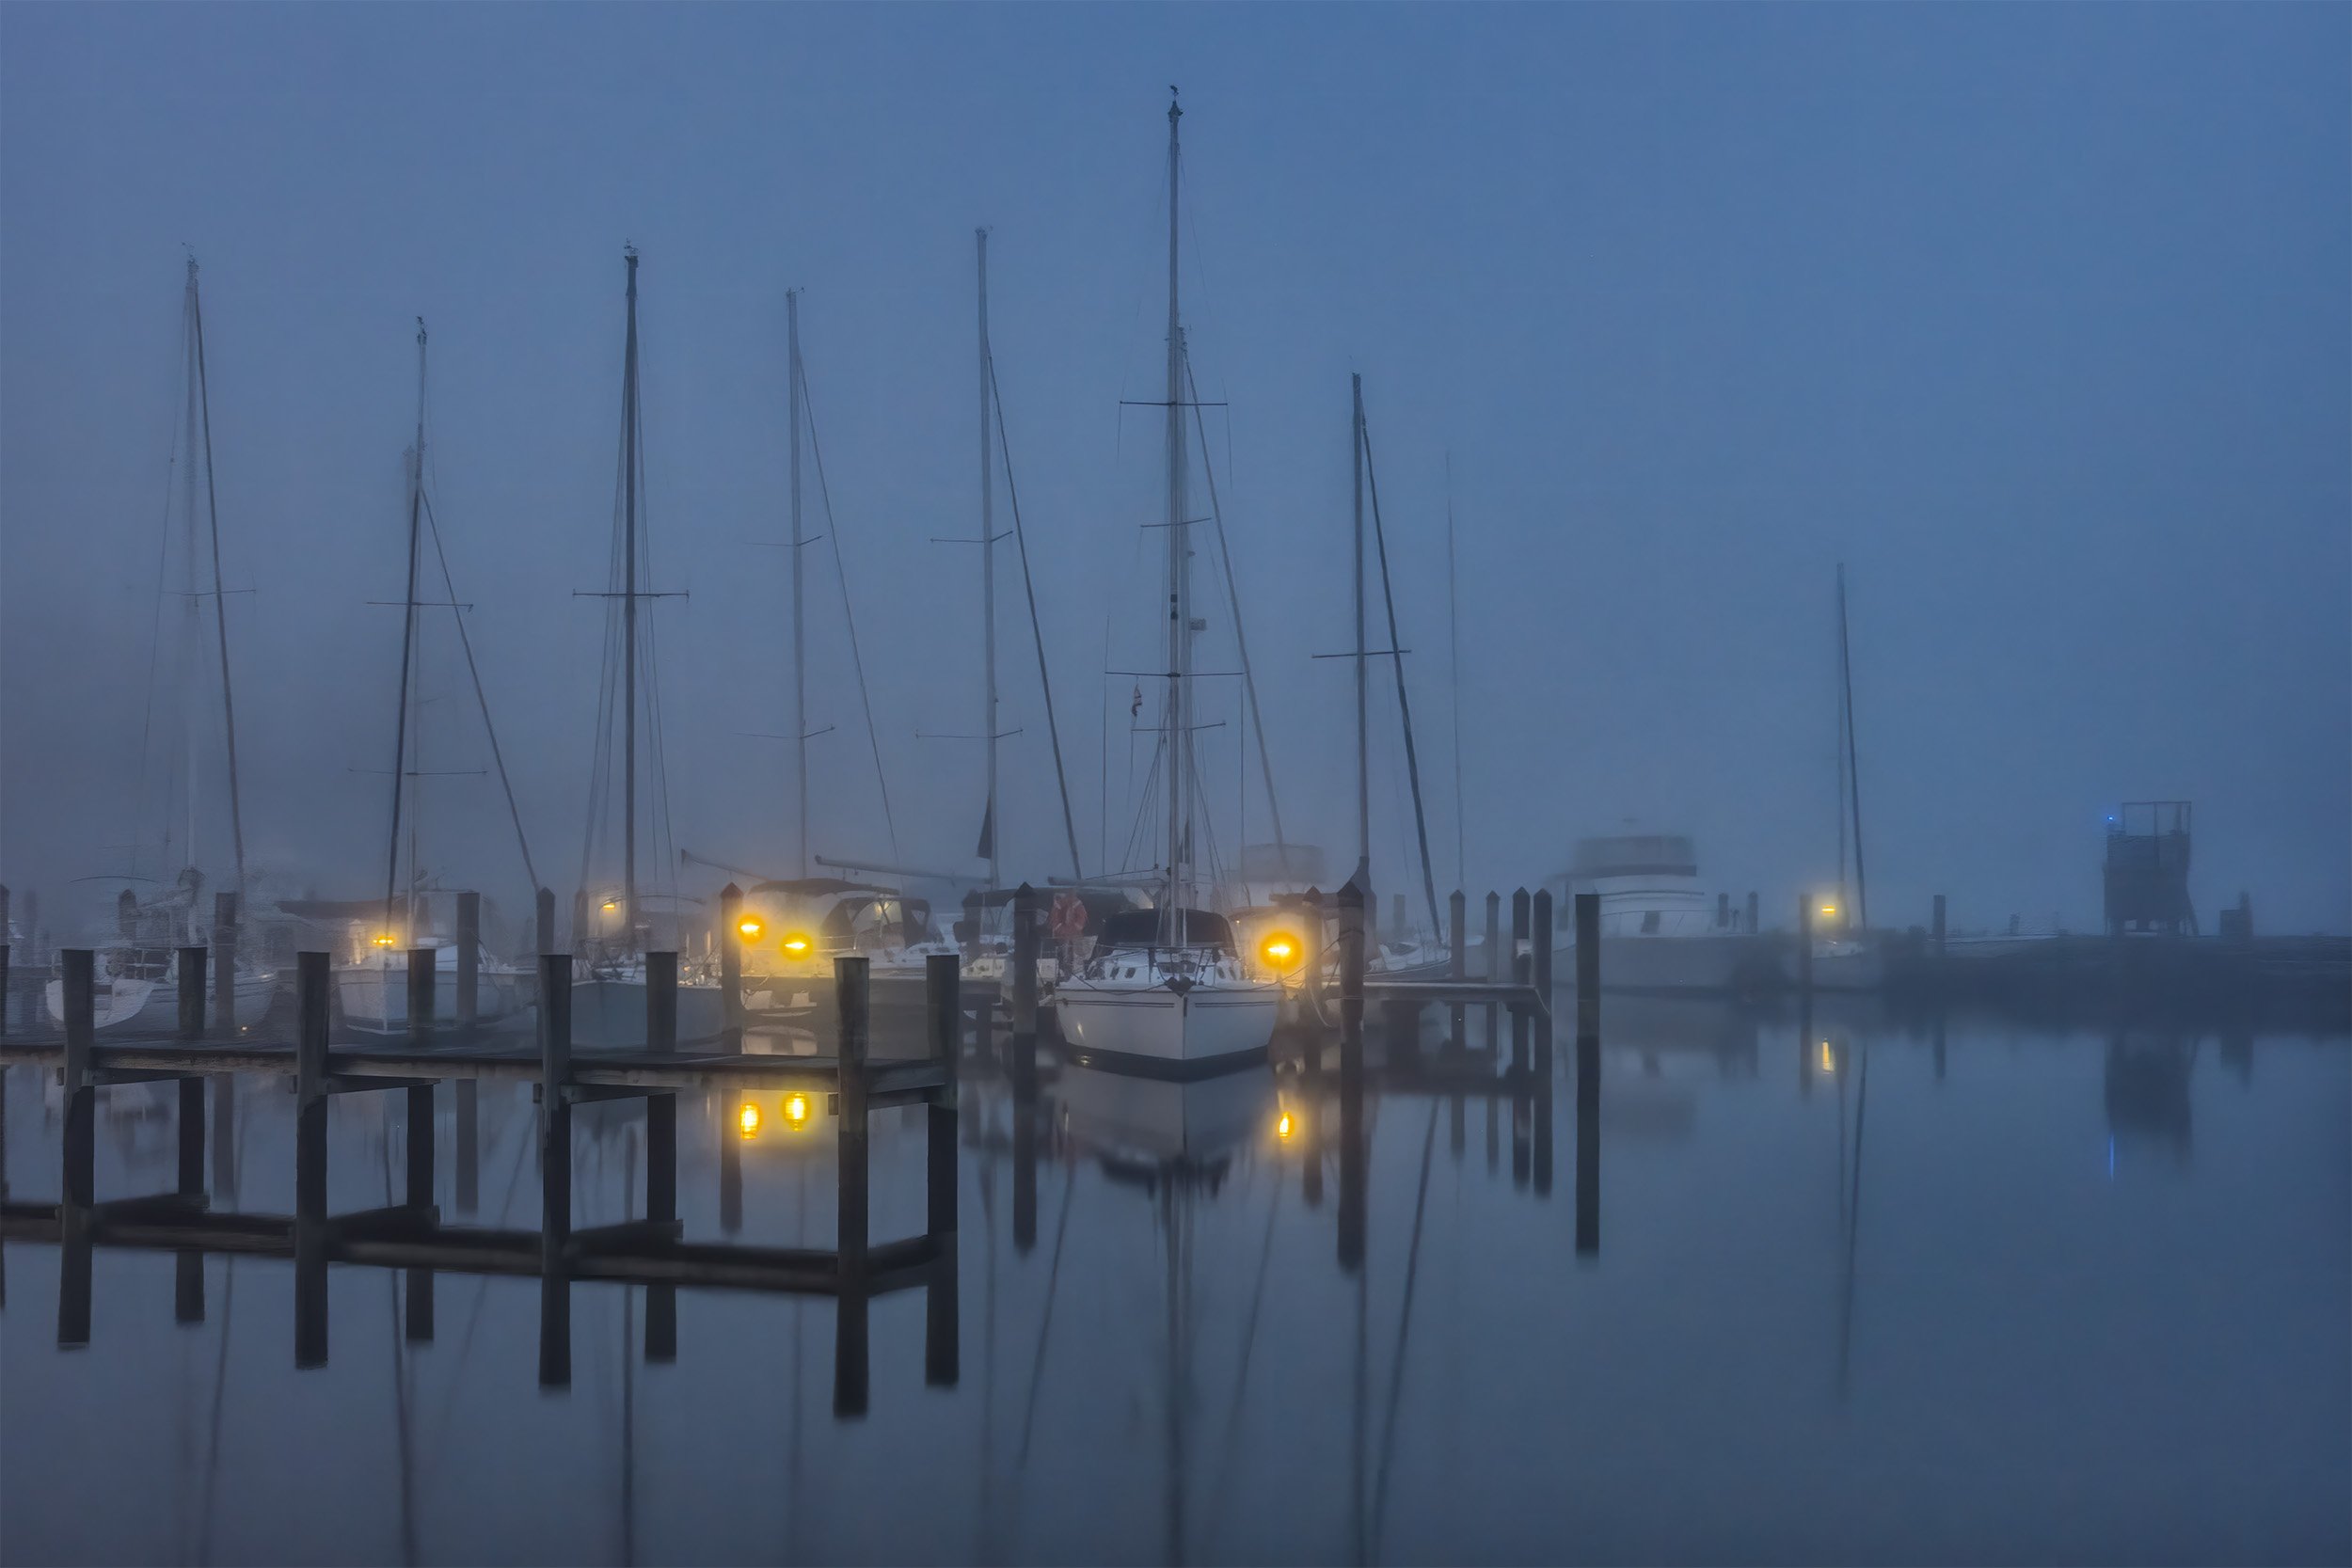 180224 Annapolis Fog 45-1a.jpg